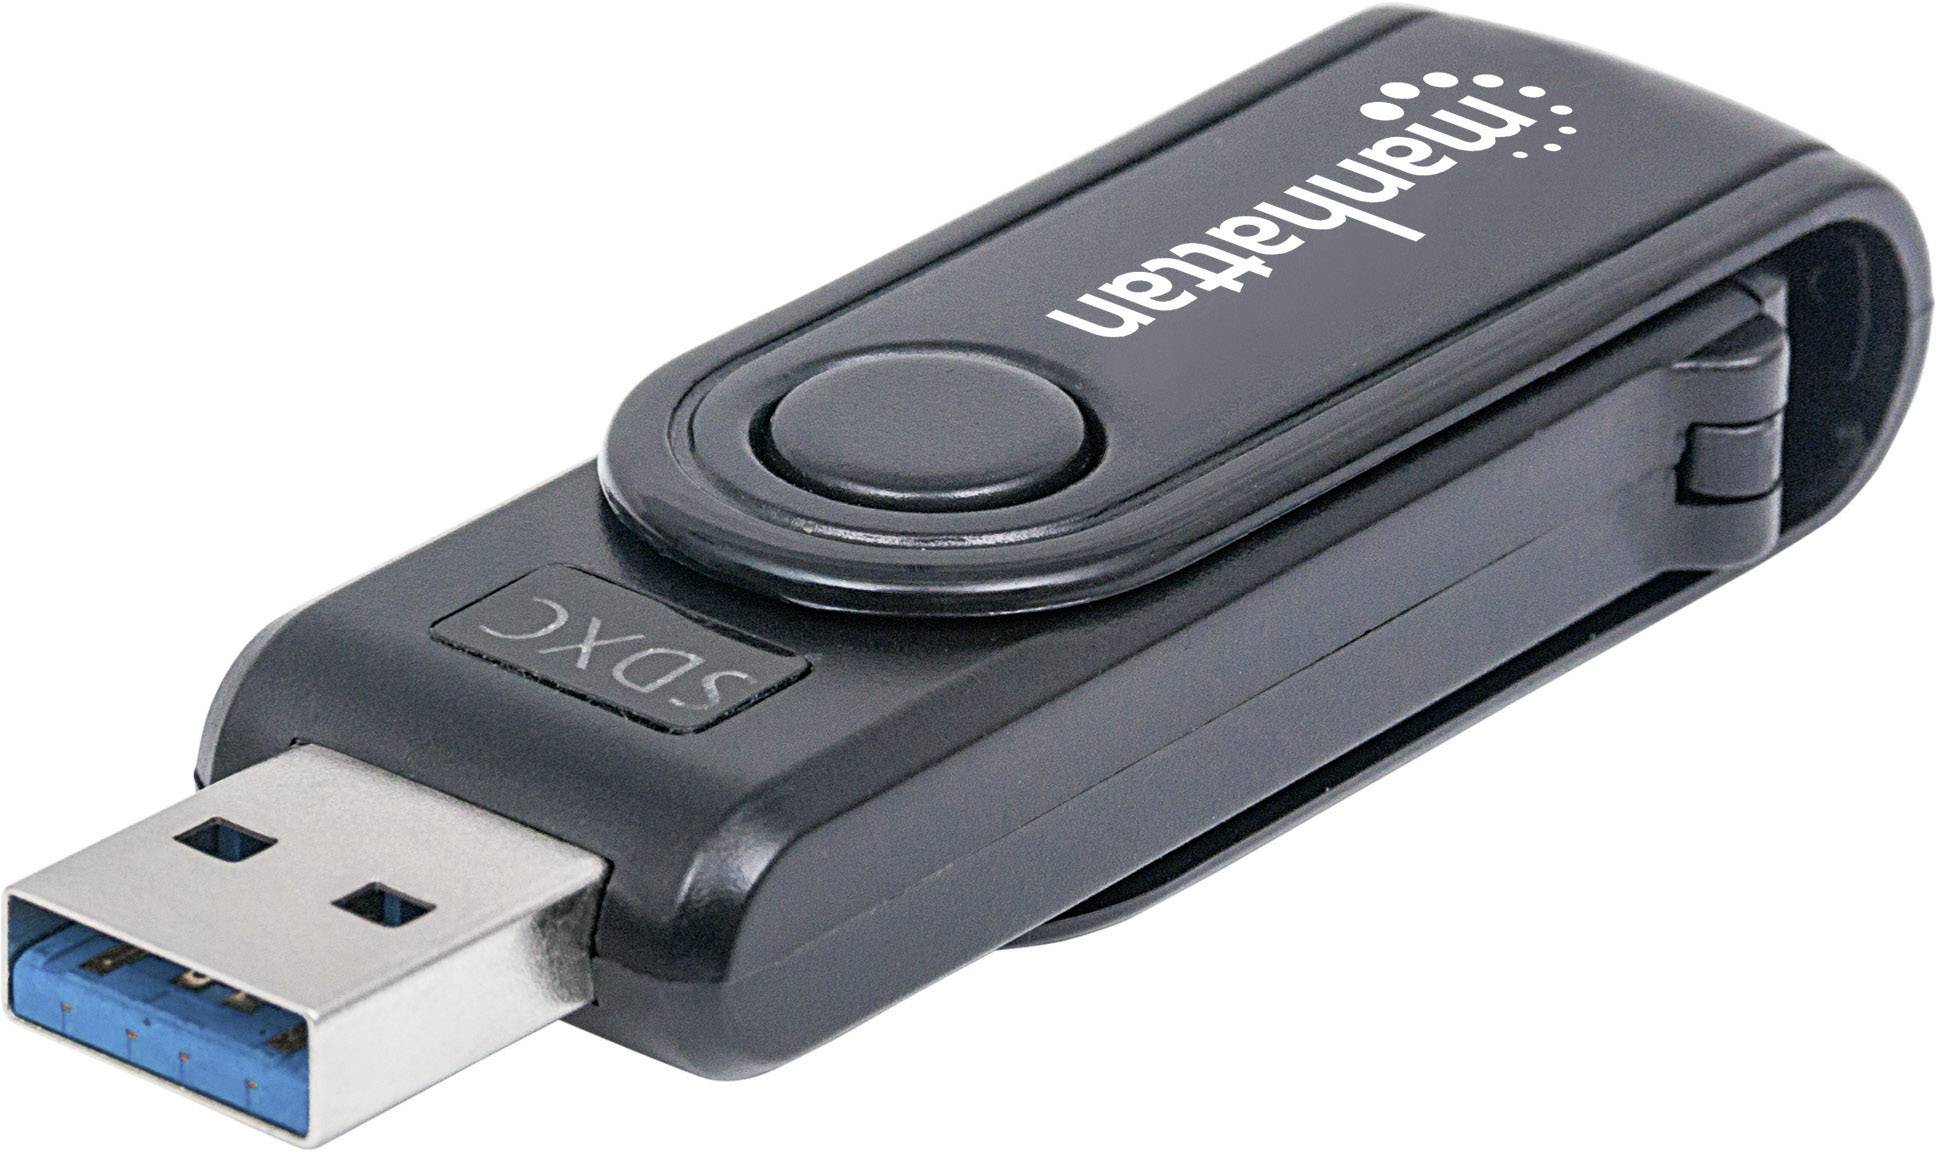 MANHATTAN USB 3.0 Multi-Card Reader/Writer externer Kartenleser 24-in-1 schwarz besonders kompakt